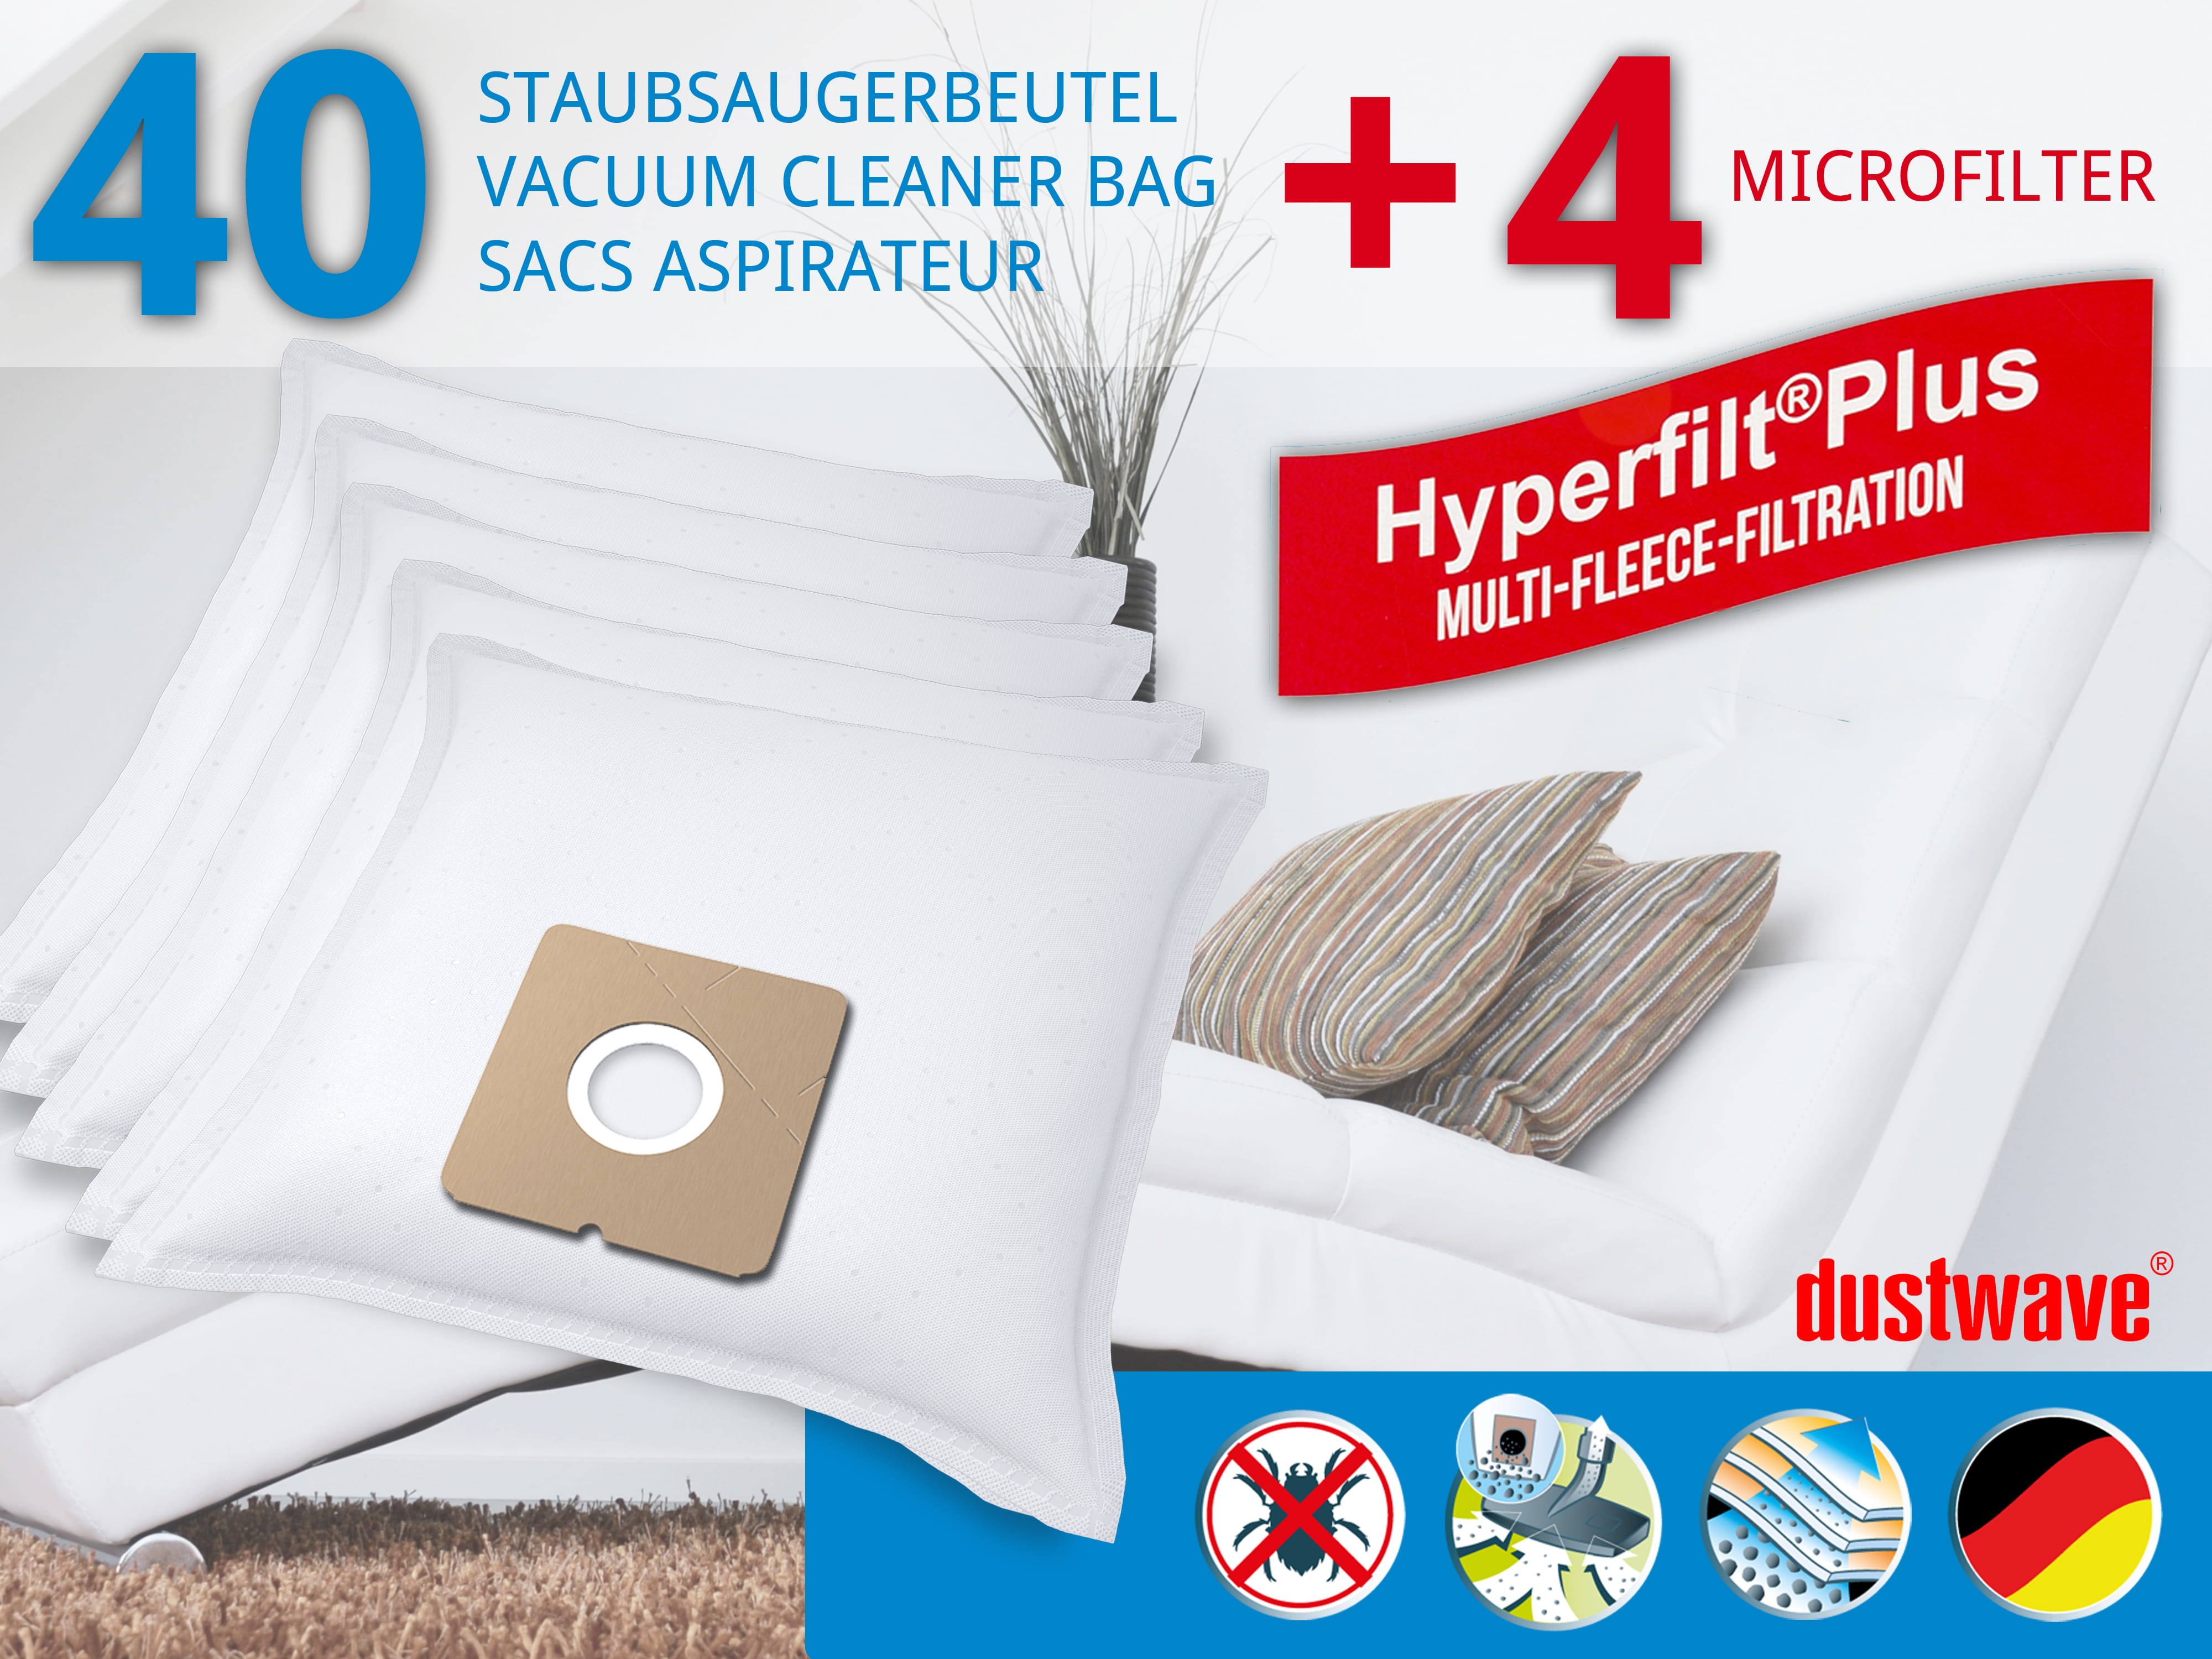 Dustwave® 40 Staubsaugerbeutel für Hoover H 55 / H55 - hocheffizient, mehrlagiges Mikrovlies mit Hygieneverschluss - Made in Germany